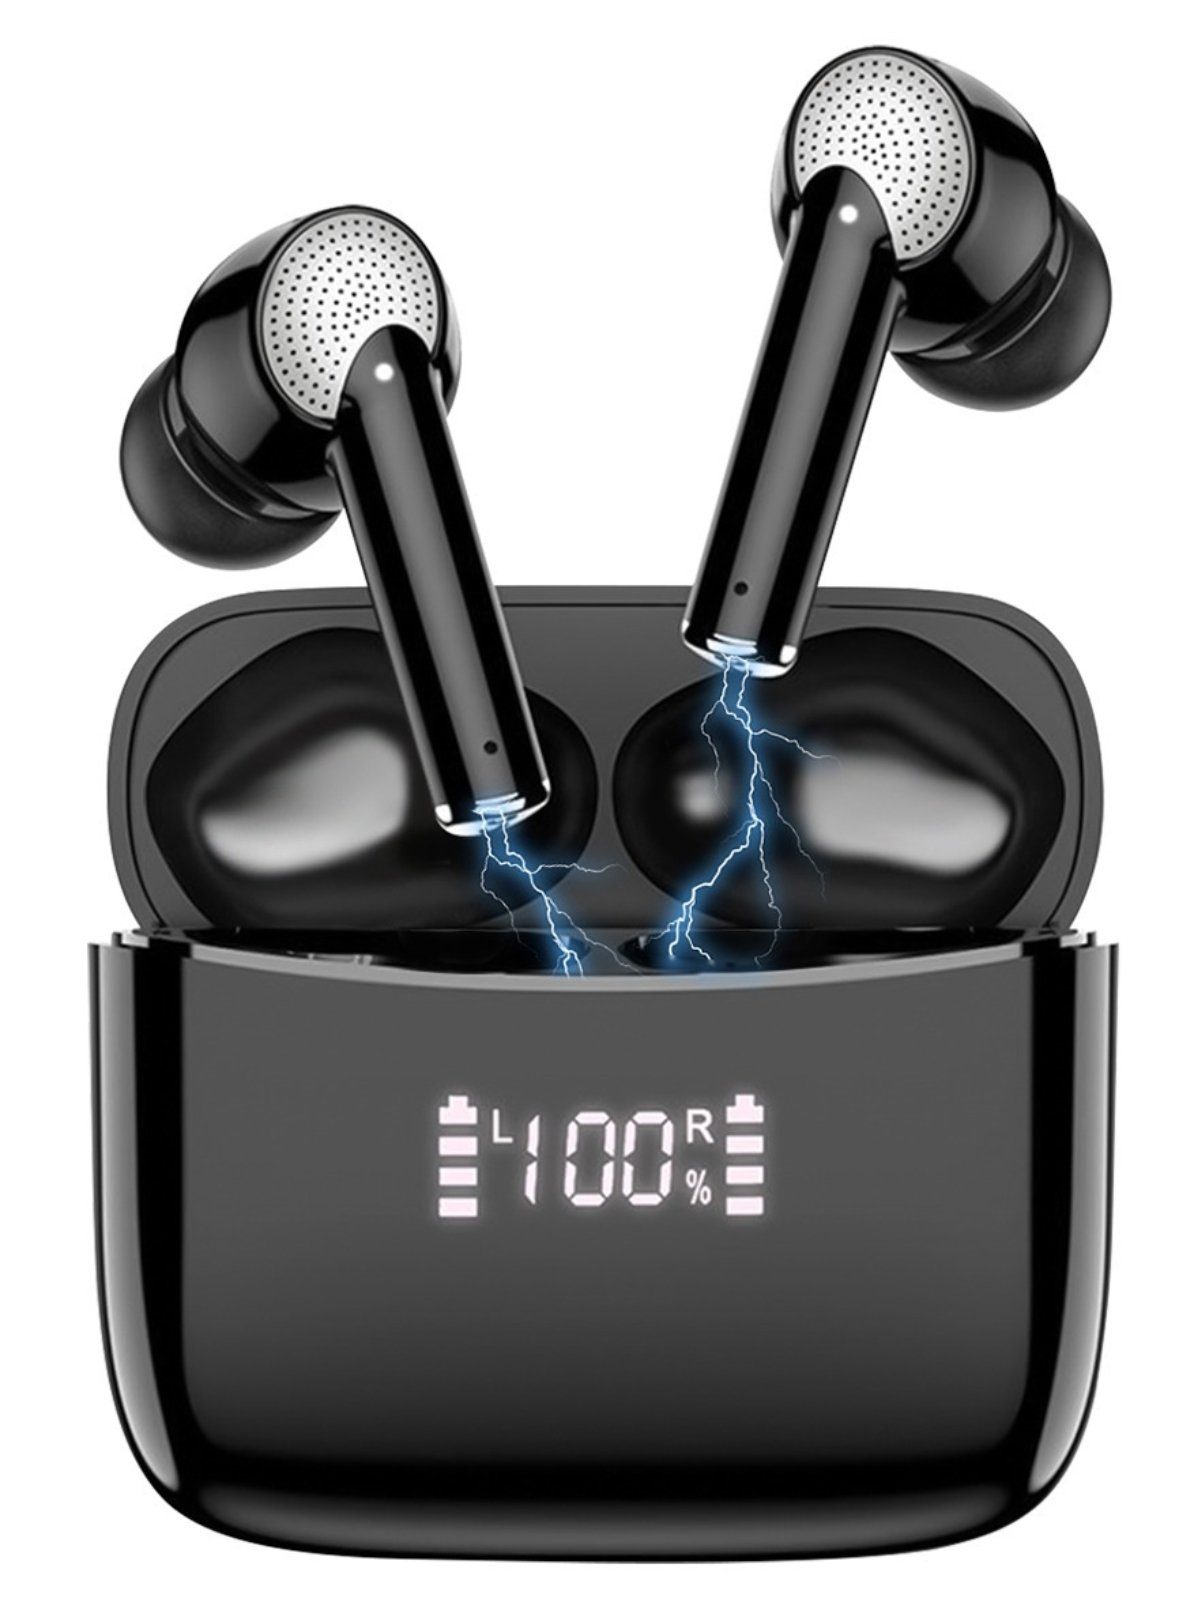 7Magic Bluetooth Kopfhörer kabellose TWS In Ear Earbuds wireless Kopfhörer (IPX7 Wasserdicht,Freisprechfunktion, Google Assistent, Siri, Wireless, Aktive Geräuschunterdrückung, 40 Stunden Spielzeit) J8 pro, Schwarz|mit LED Anzeige